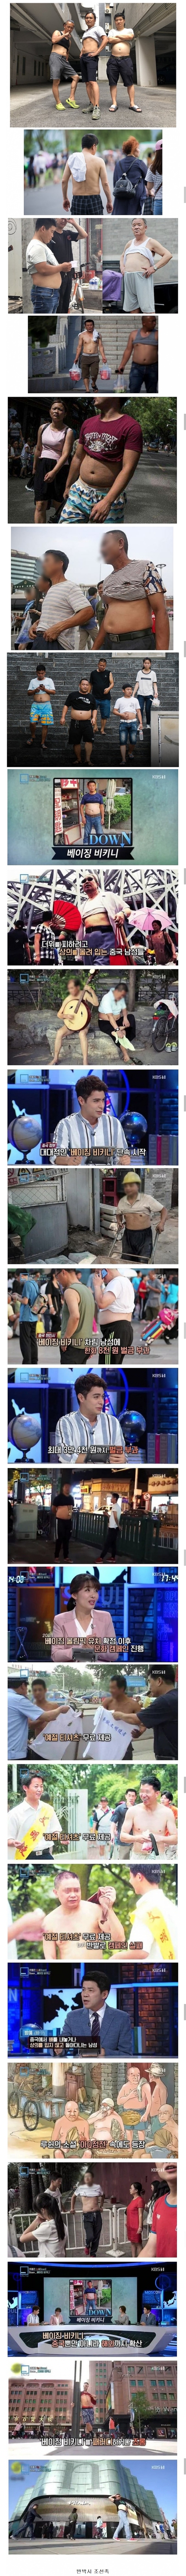 혐주의) 중국의 진짜 전통의상을 알아보자.jpg